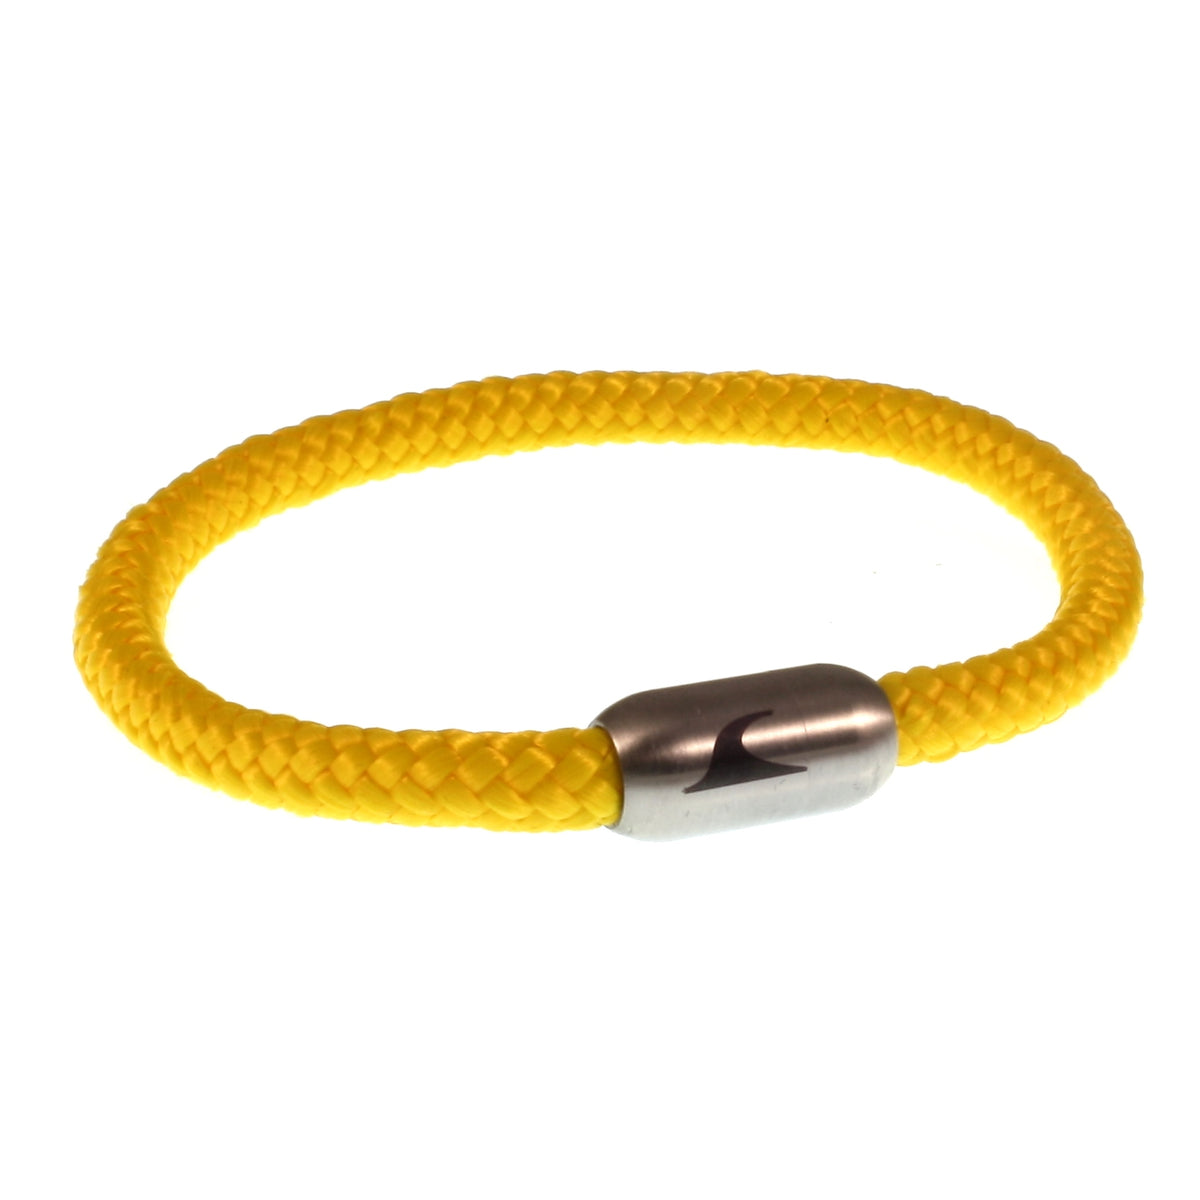 Herren-segeltau-armband-damen-sylt-gelb-silber-geflochten-Edelstahlverschluss-vorn-wavepirate-shop-st